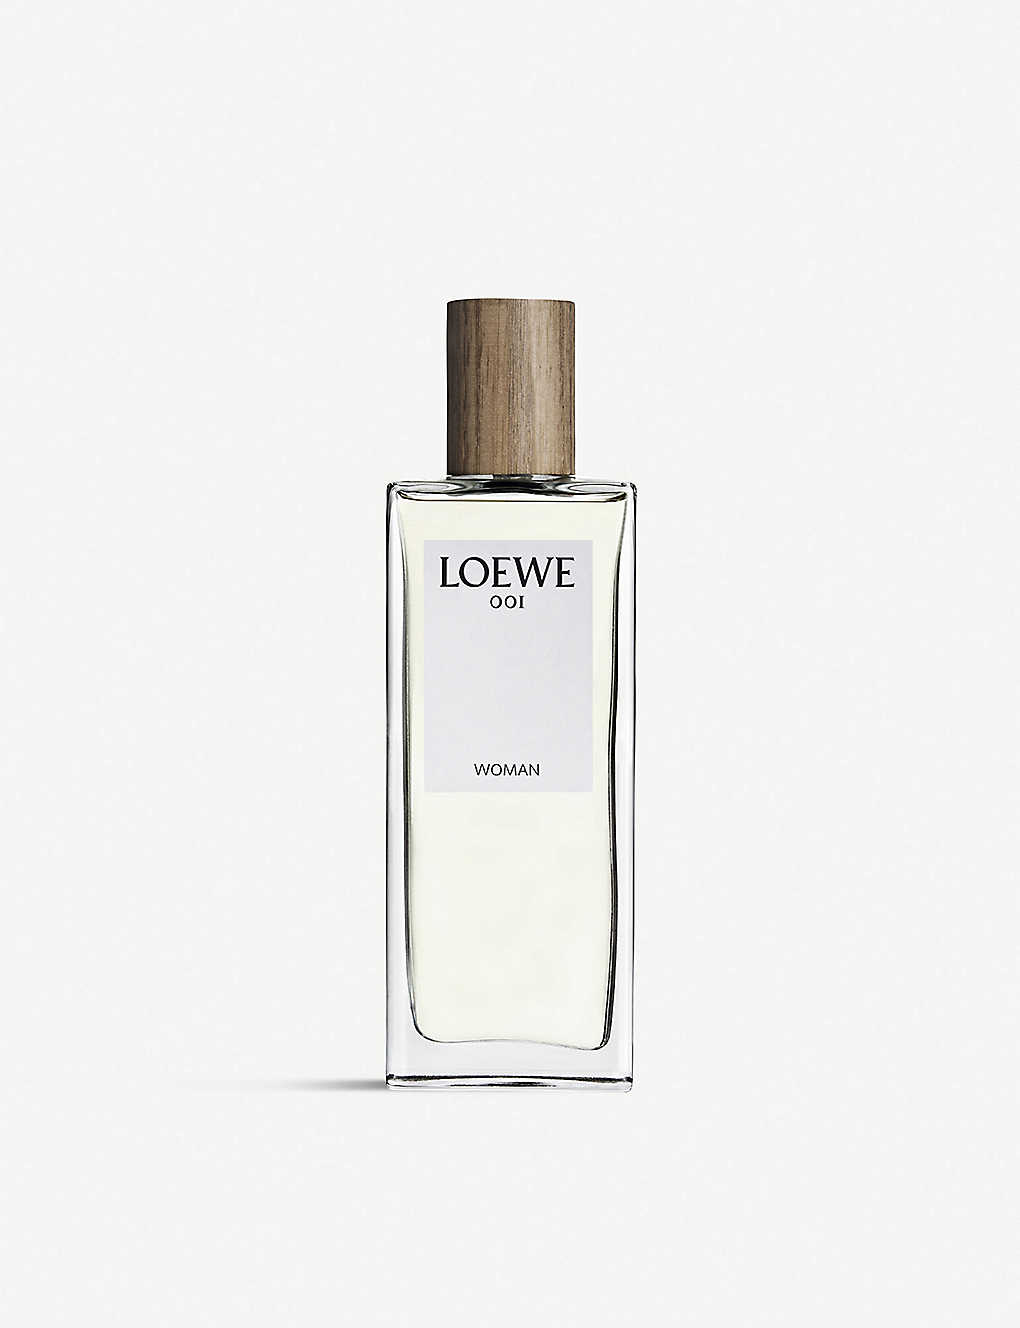 LOEWE - Loewe 001 Woman Eau de Parfum | Selfridges.com